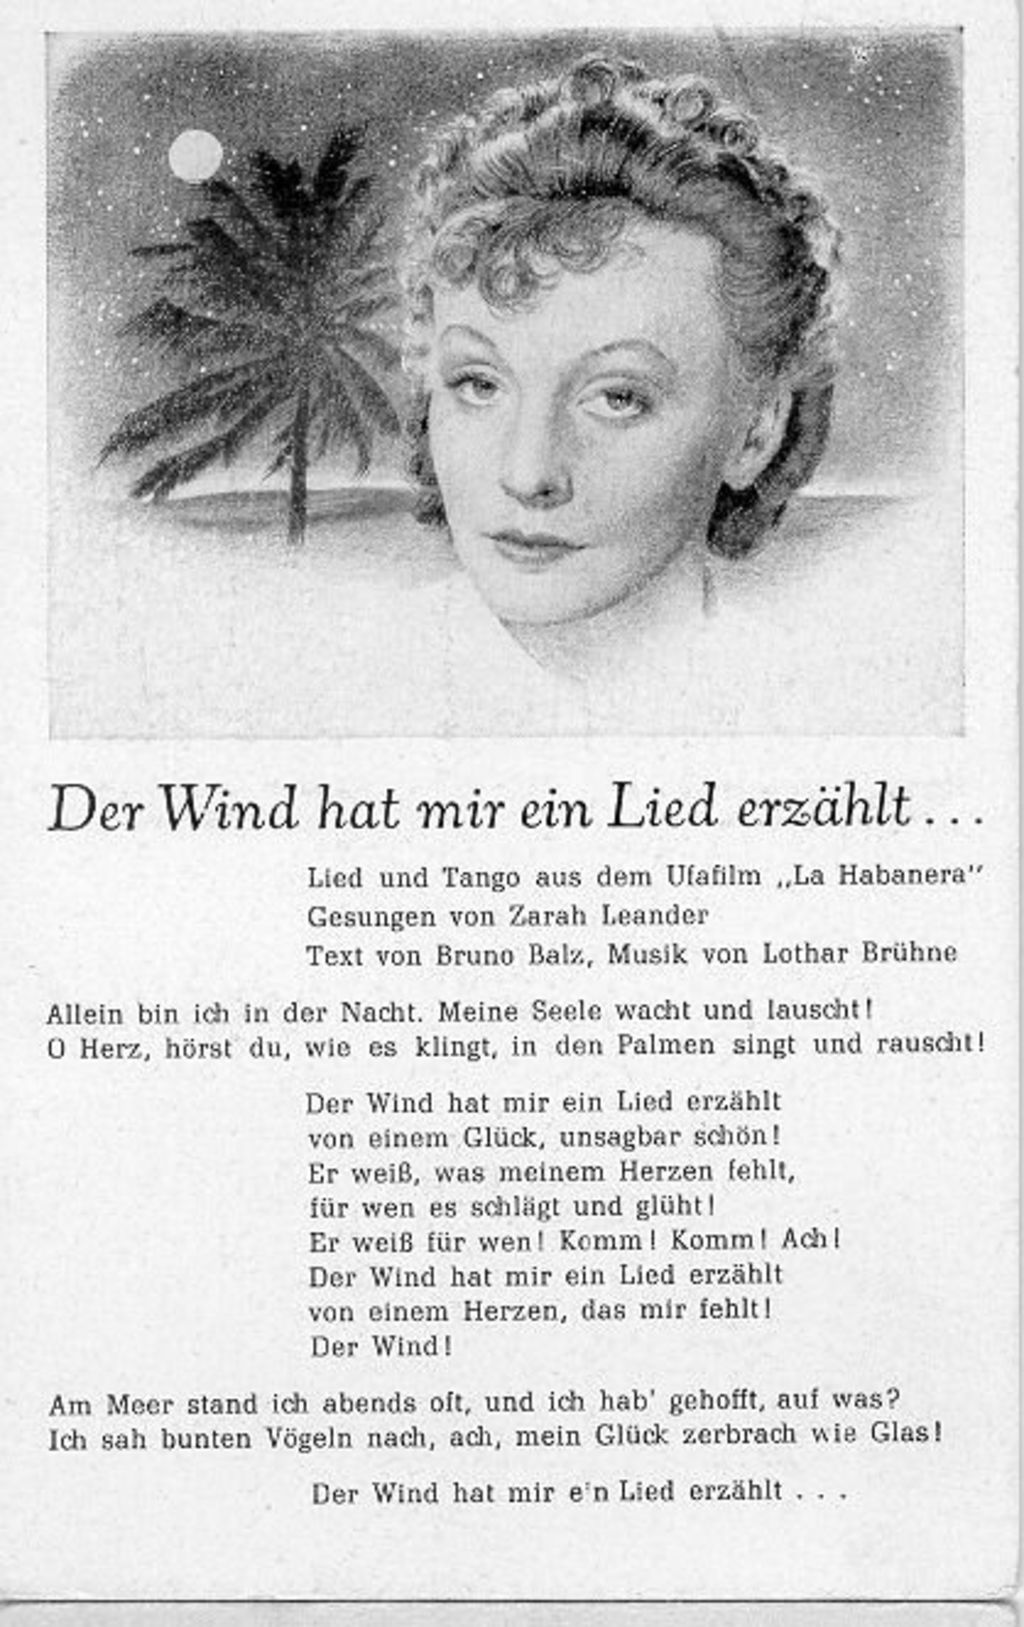 Exponat: Postkarte: Leander, Zarah "Der Wind hat mir ein Lied erzählt", 1937/38